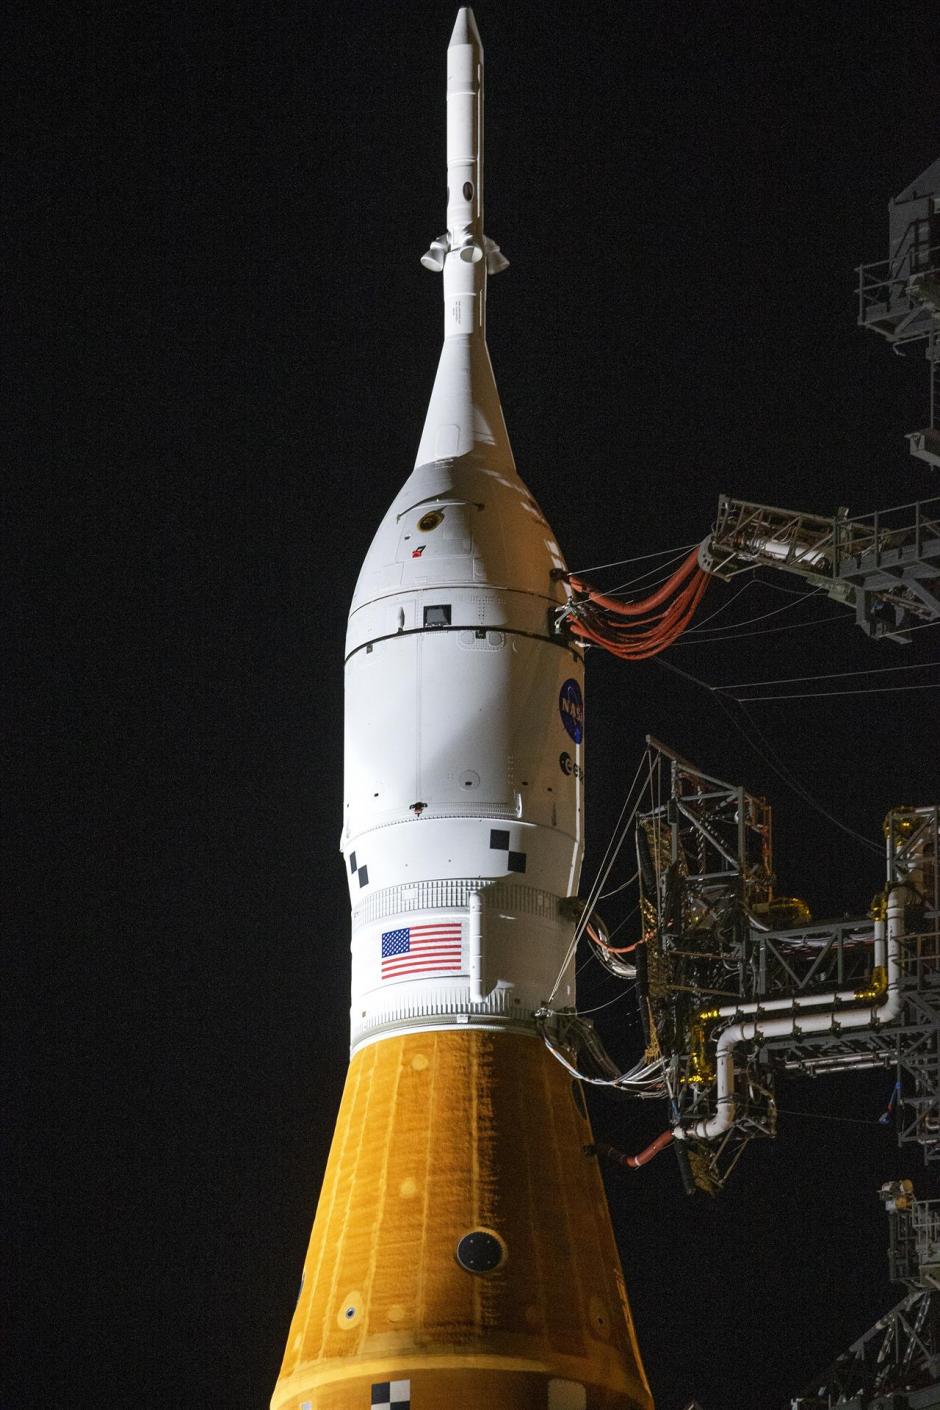 Dentro de la cápsula Orion irán los astronautas que envíe la NASA a la Luna, una serie de misiones previstas para los próximos años.